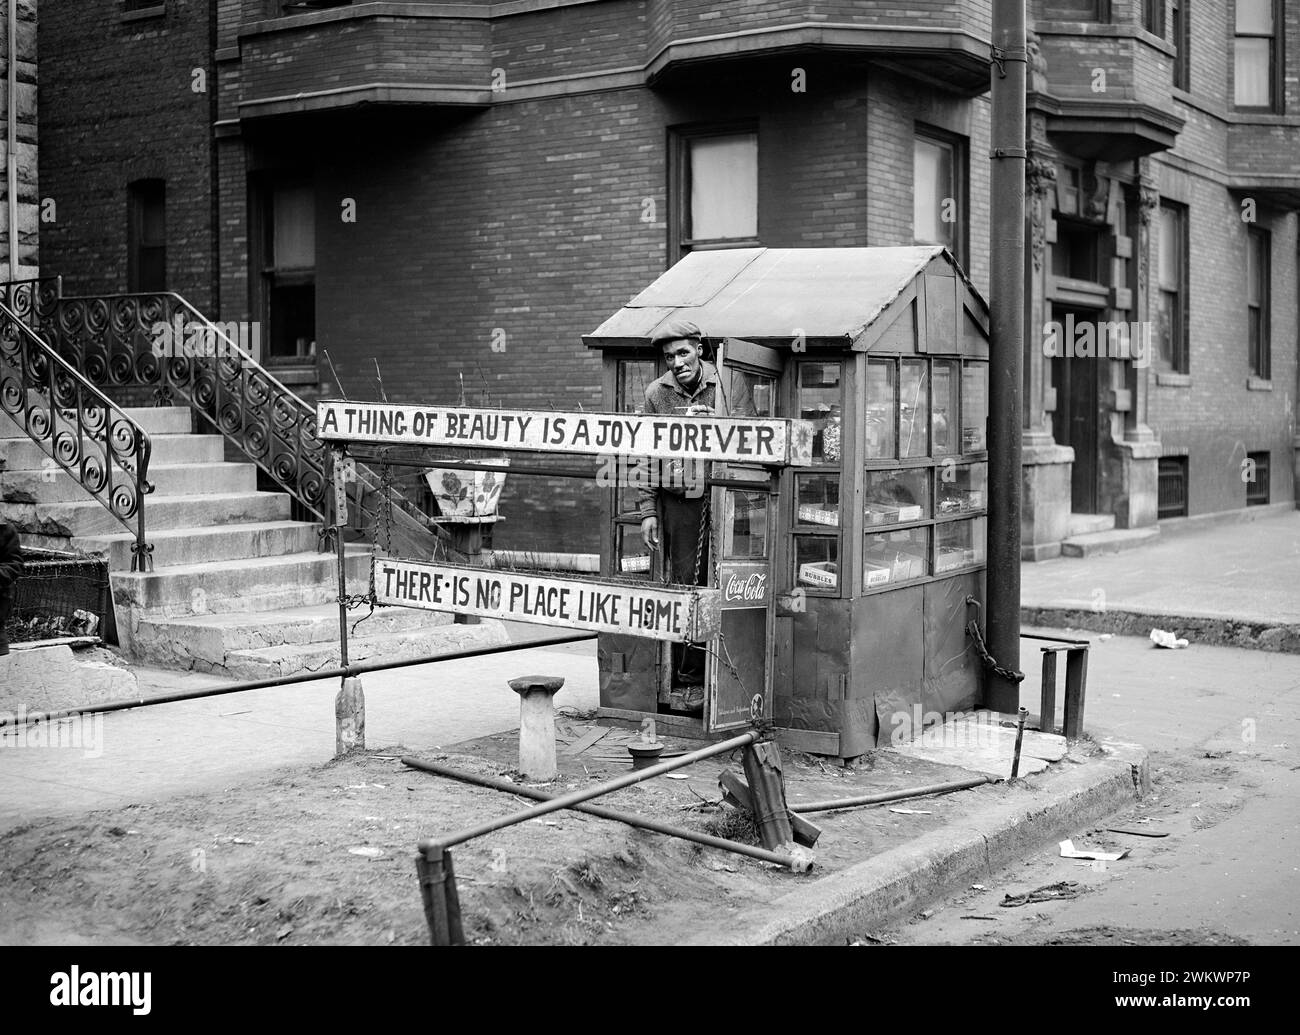 Stand de bonbons avec propriétaire, côté sud, Chicago, Illinois, États-Unis, Russell Lee, U.S. Farm Security Administration, avril 1941 Banque D'Images